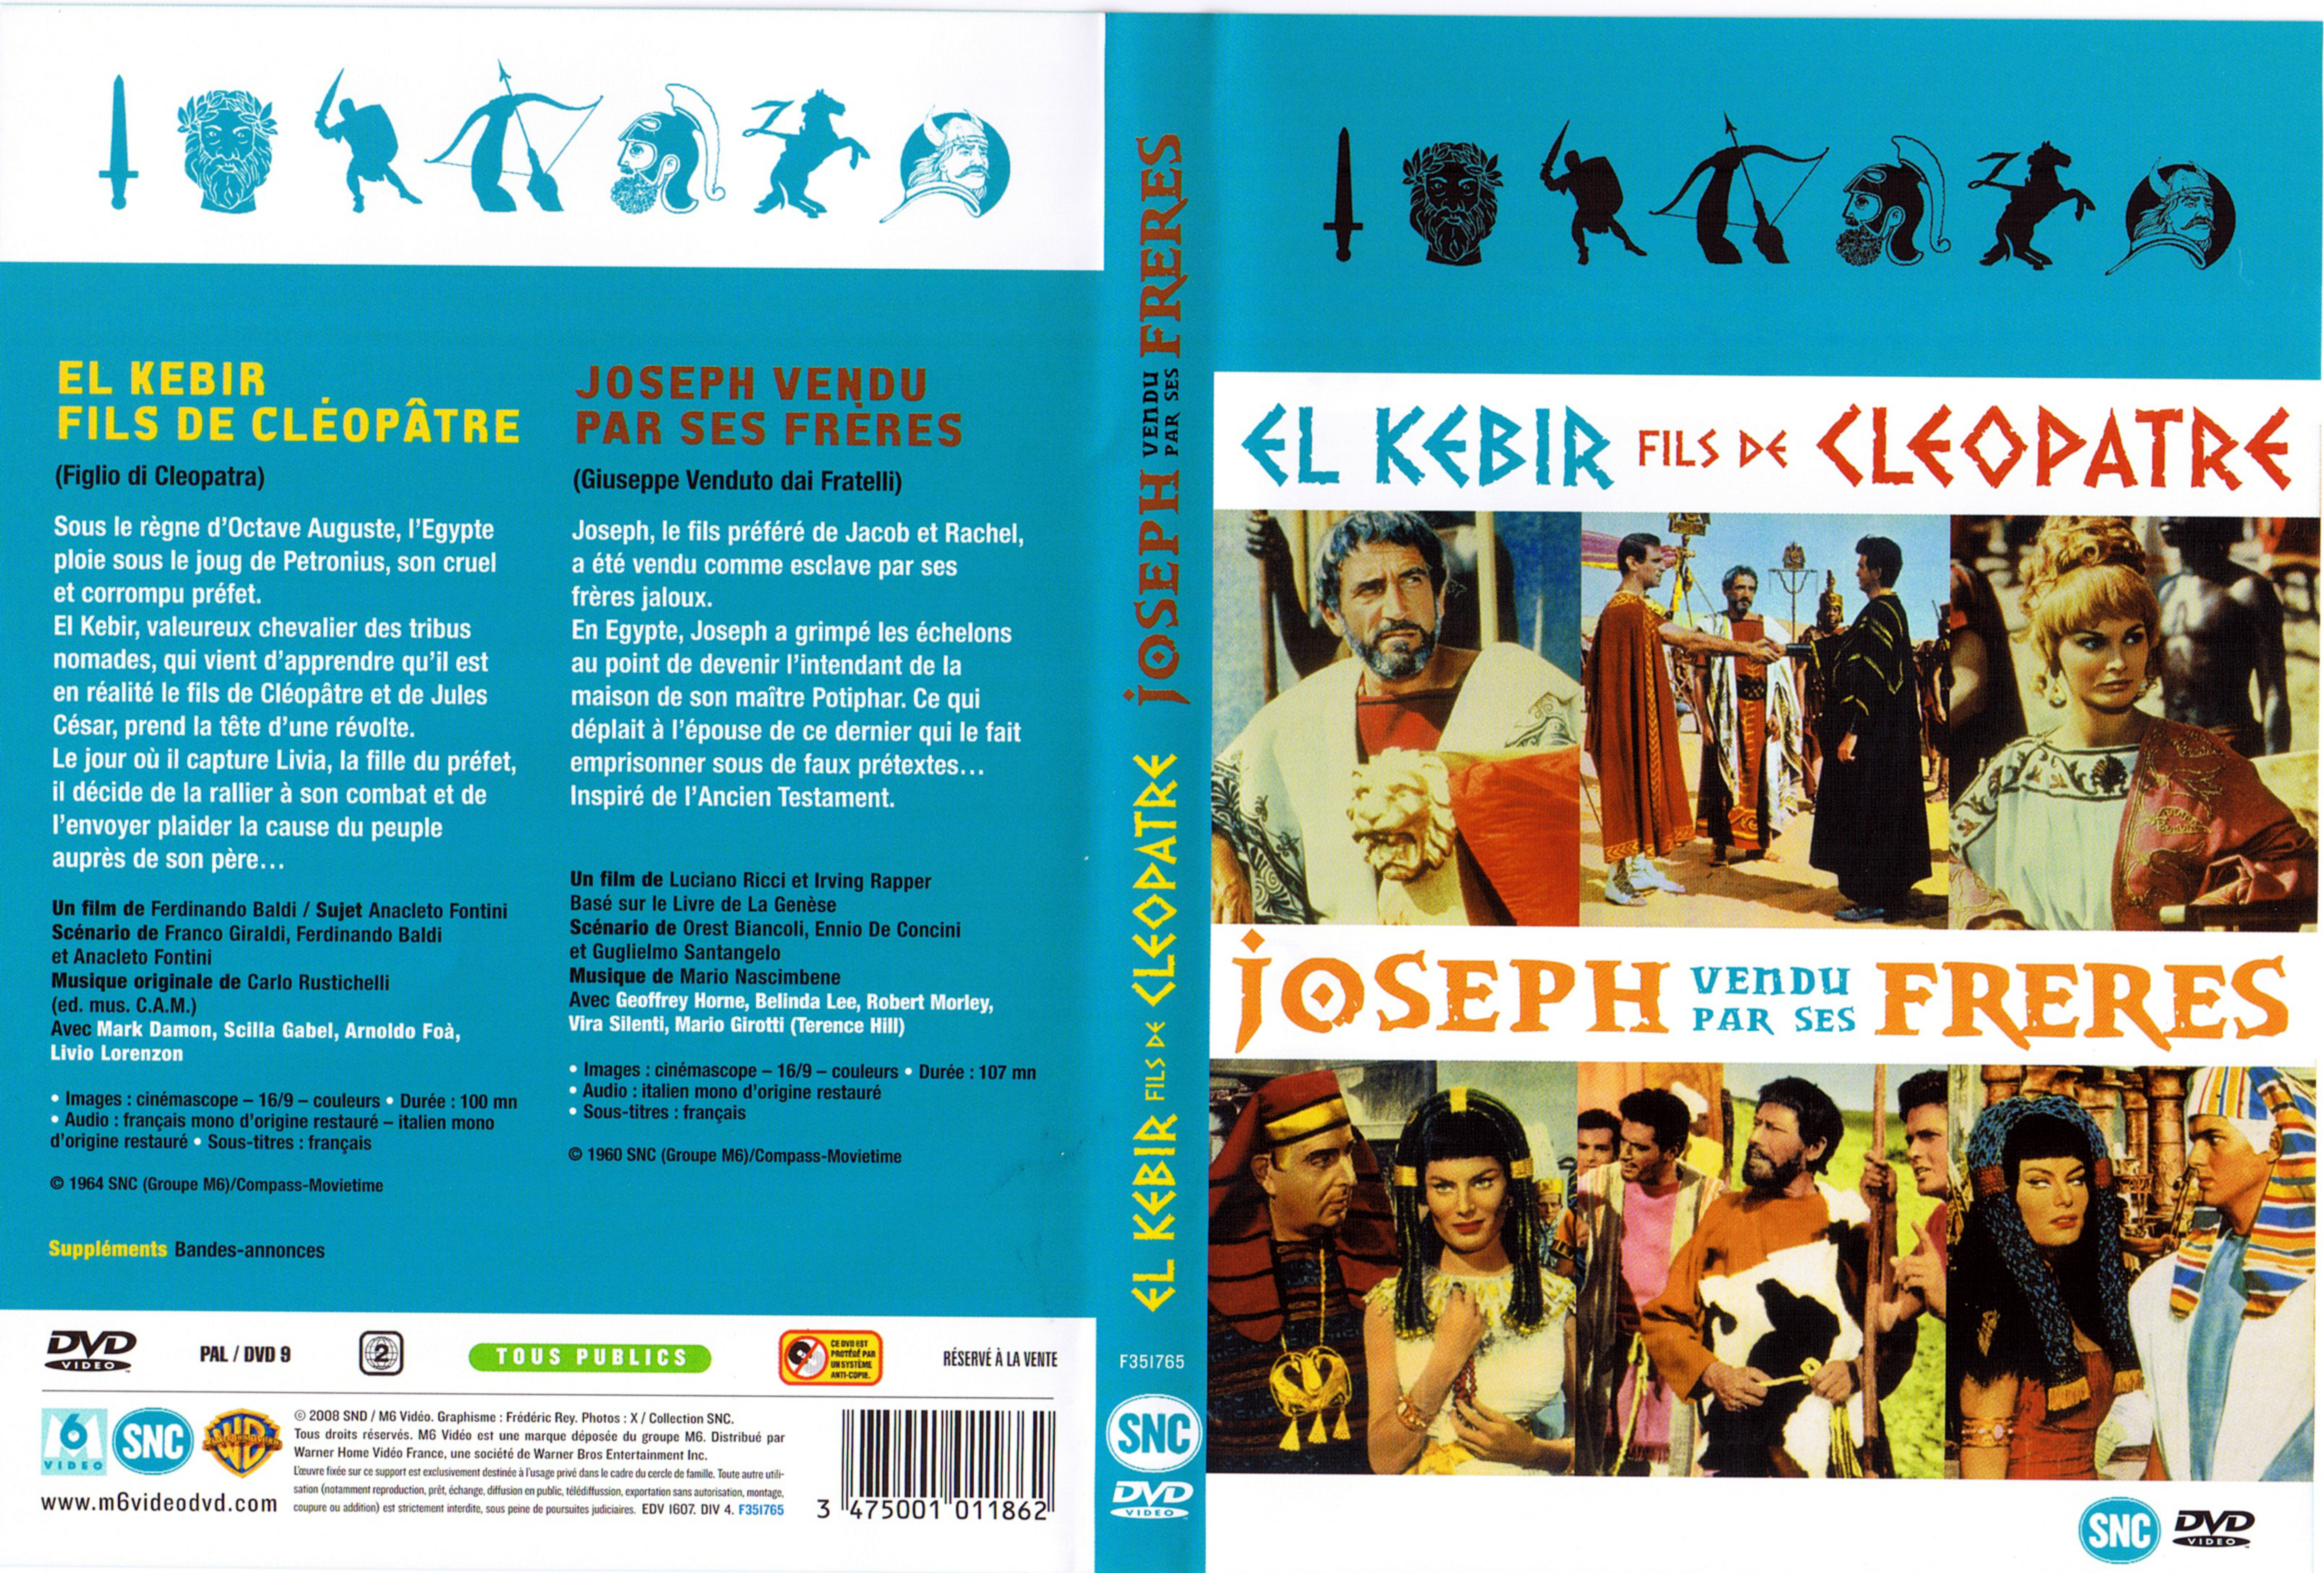 Jaquette DVD El Kebir fils de Clopatre - Joseph vendu par ses frres